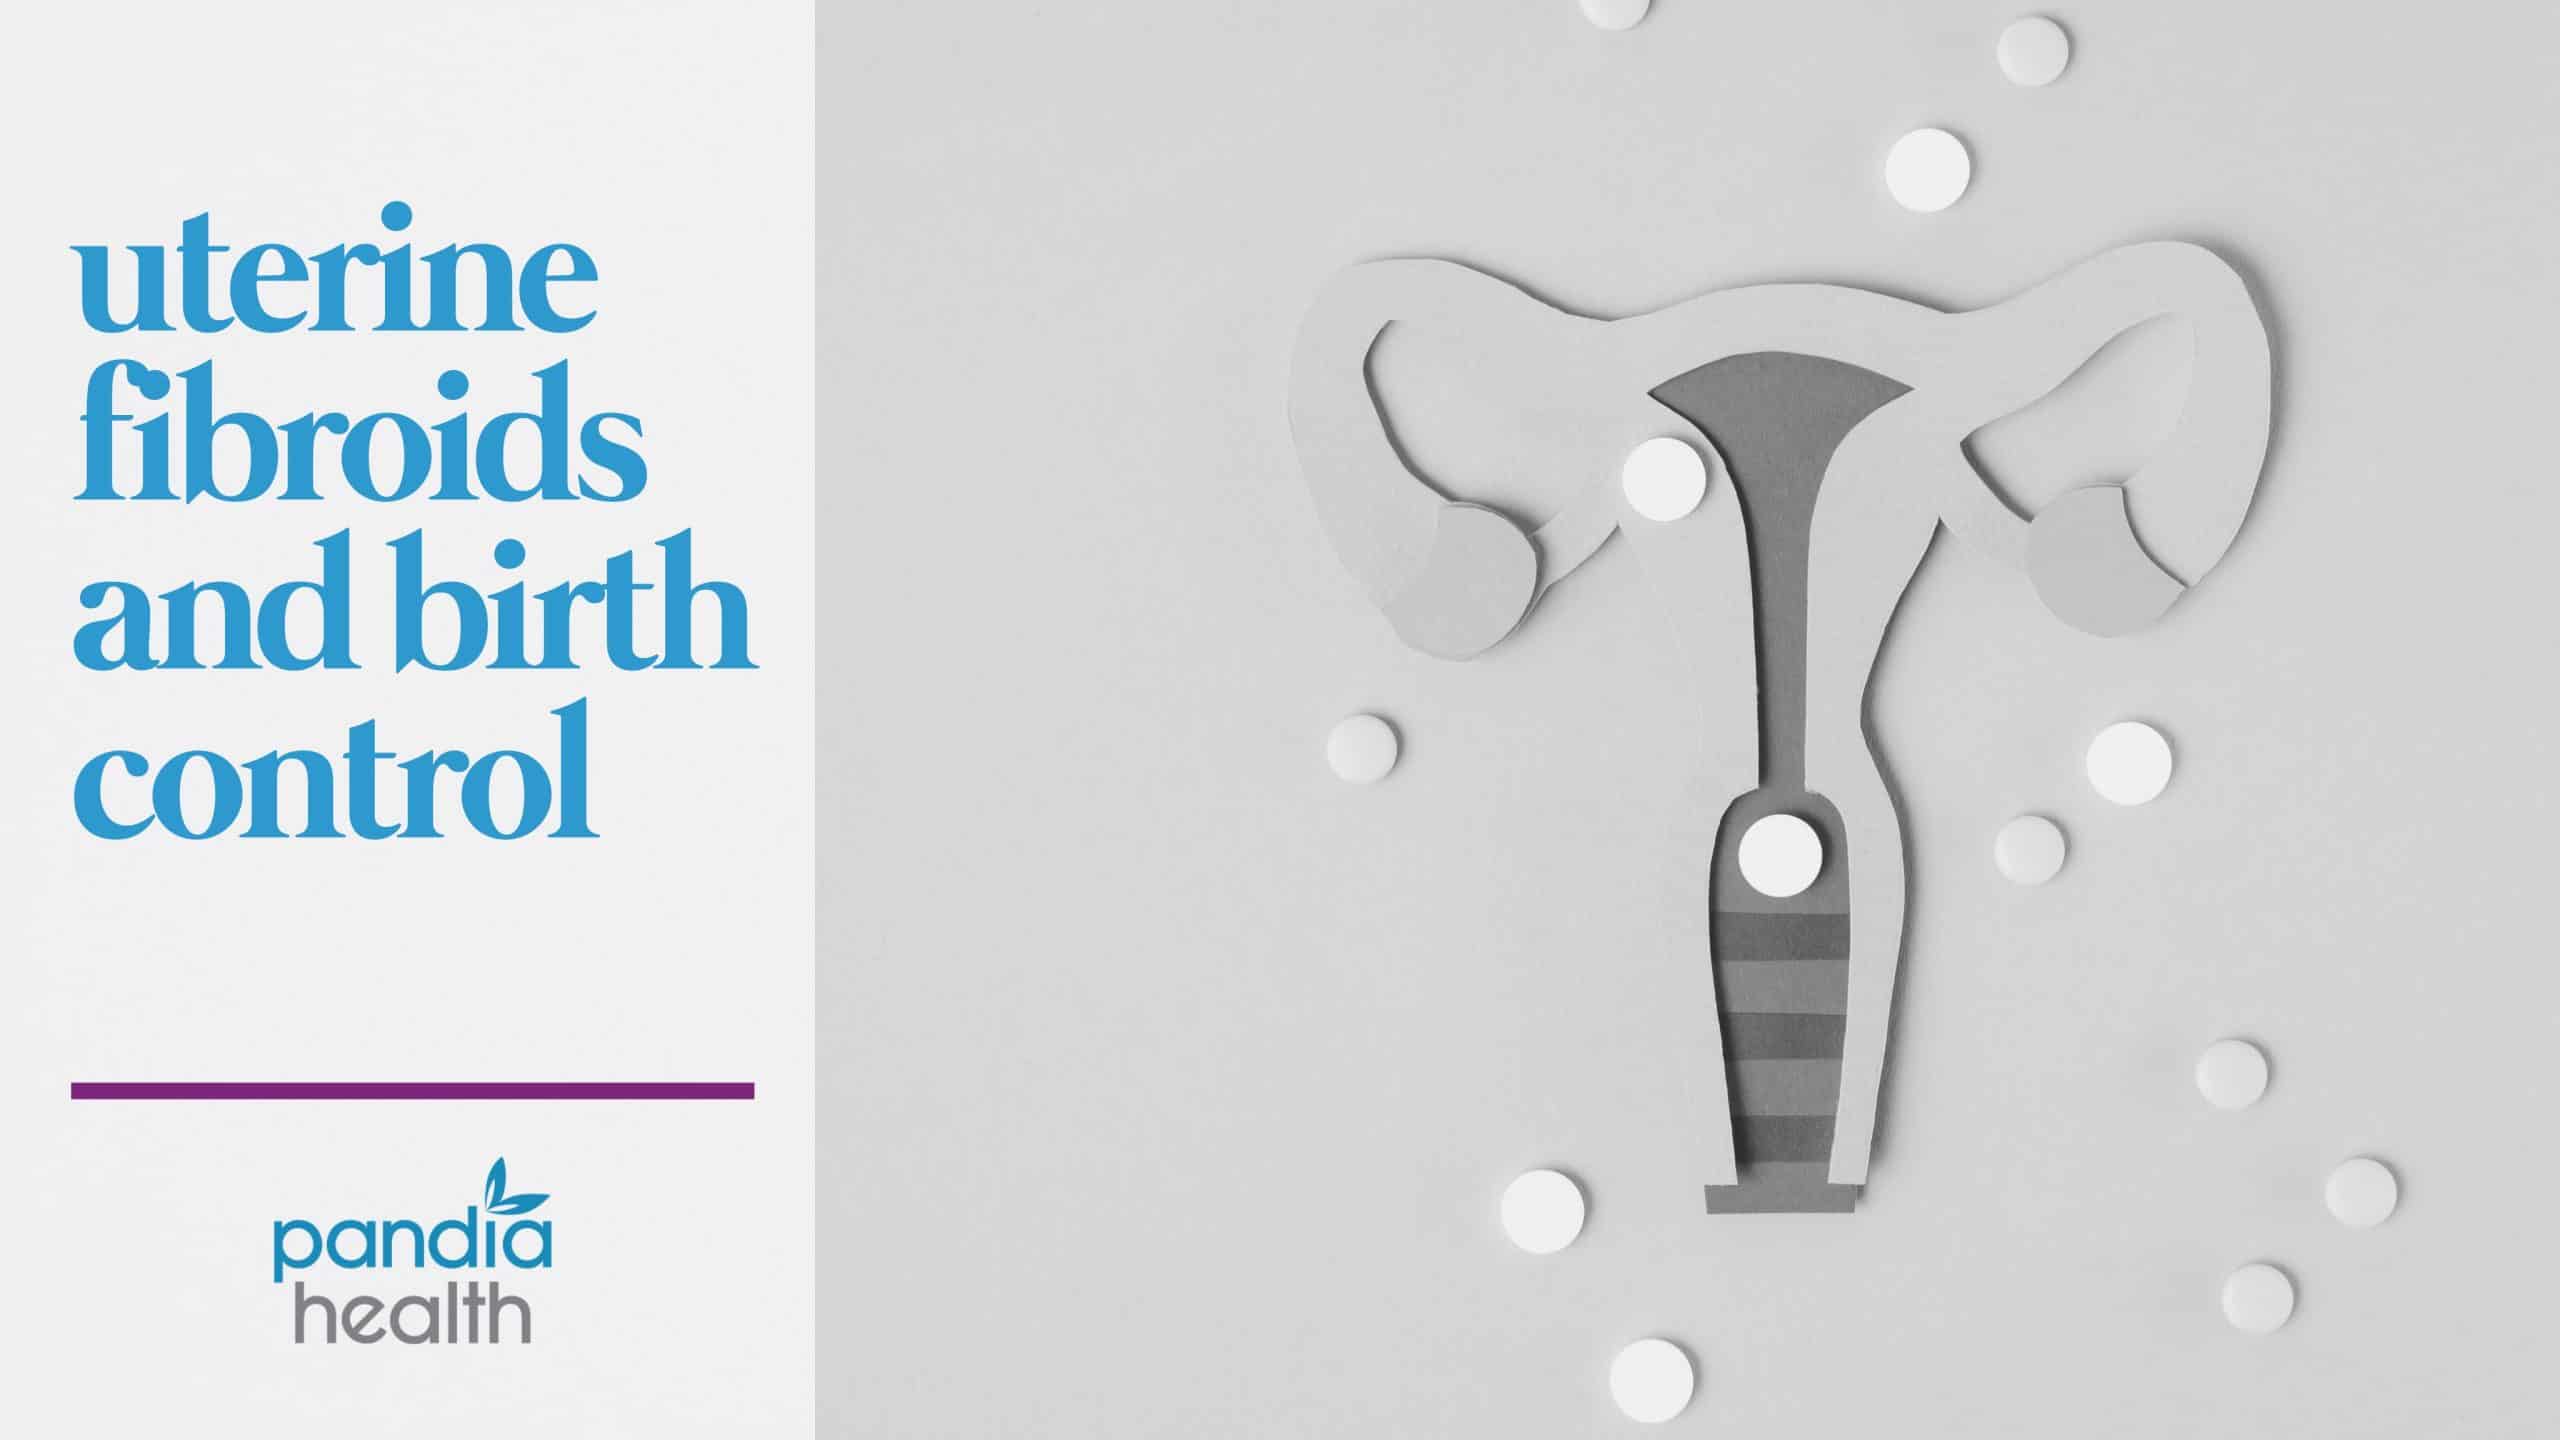 uterine fibroids and birth control